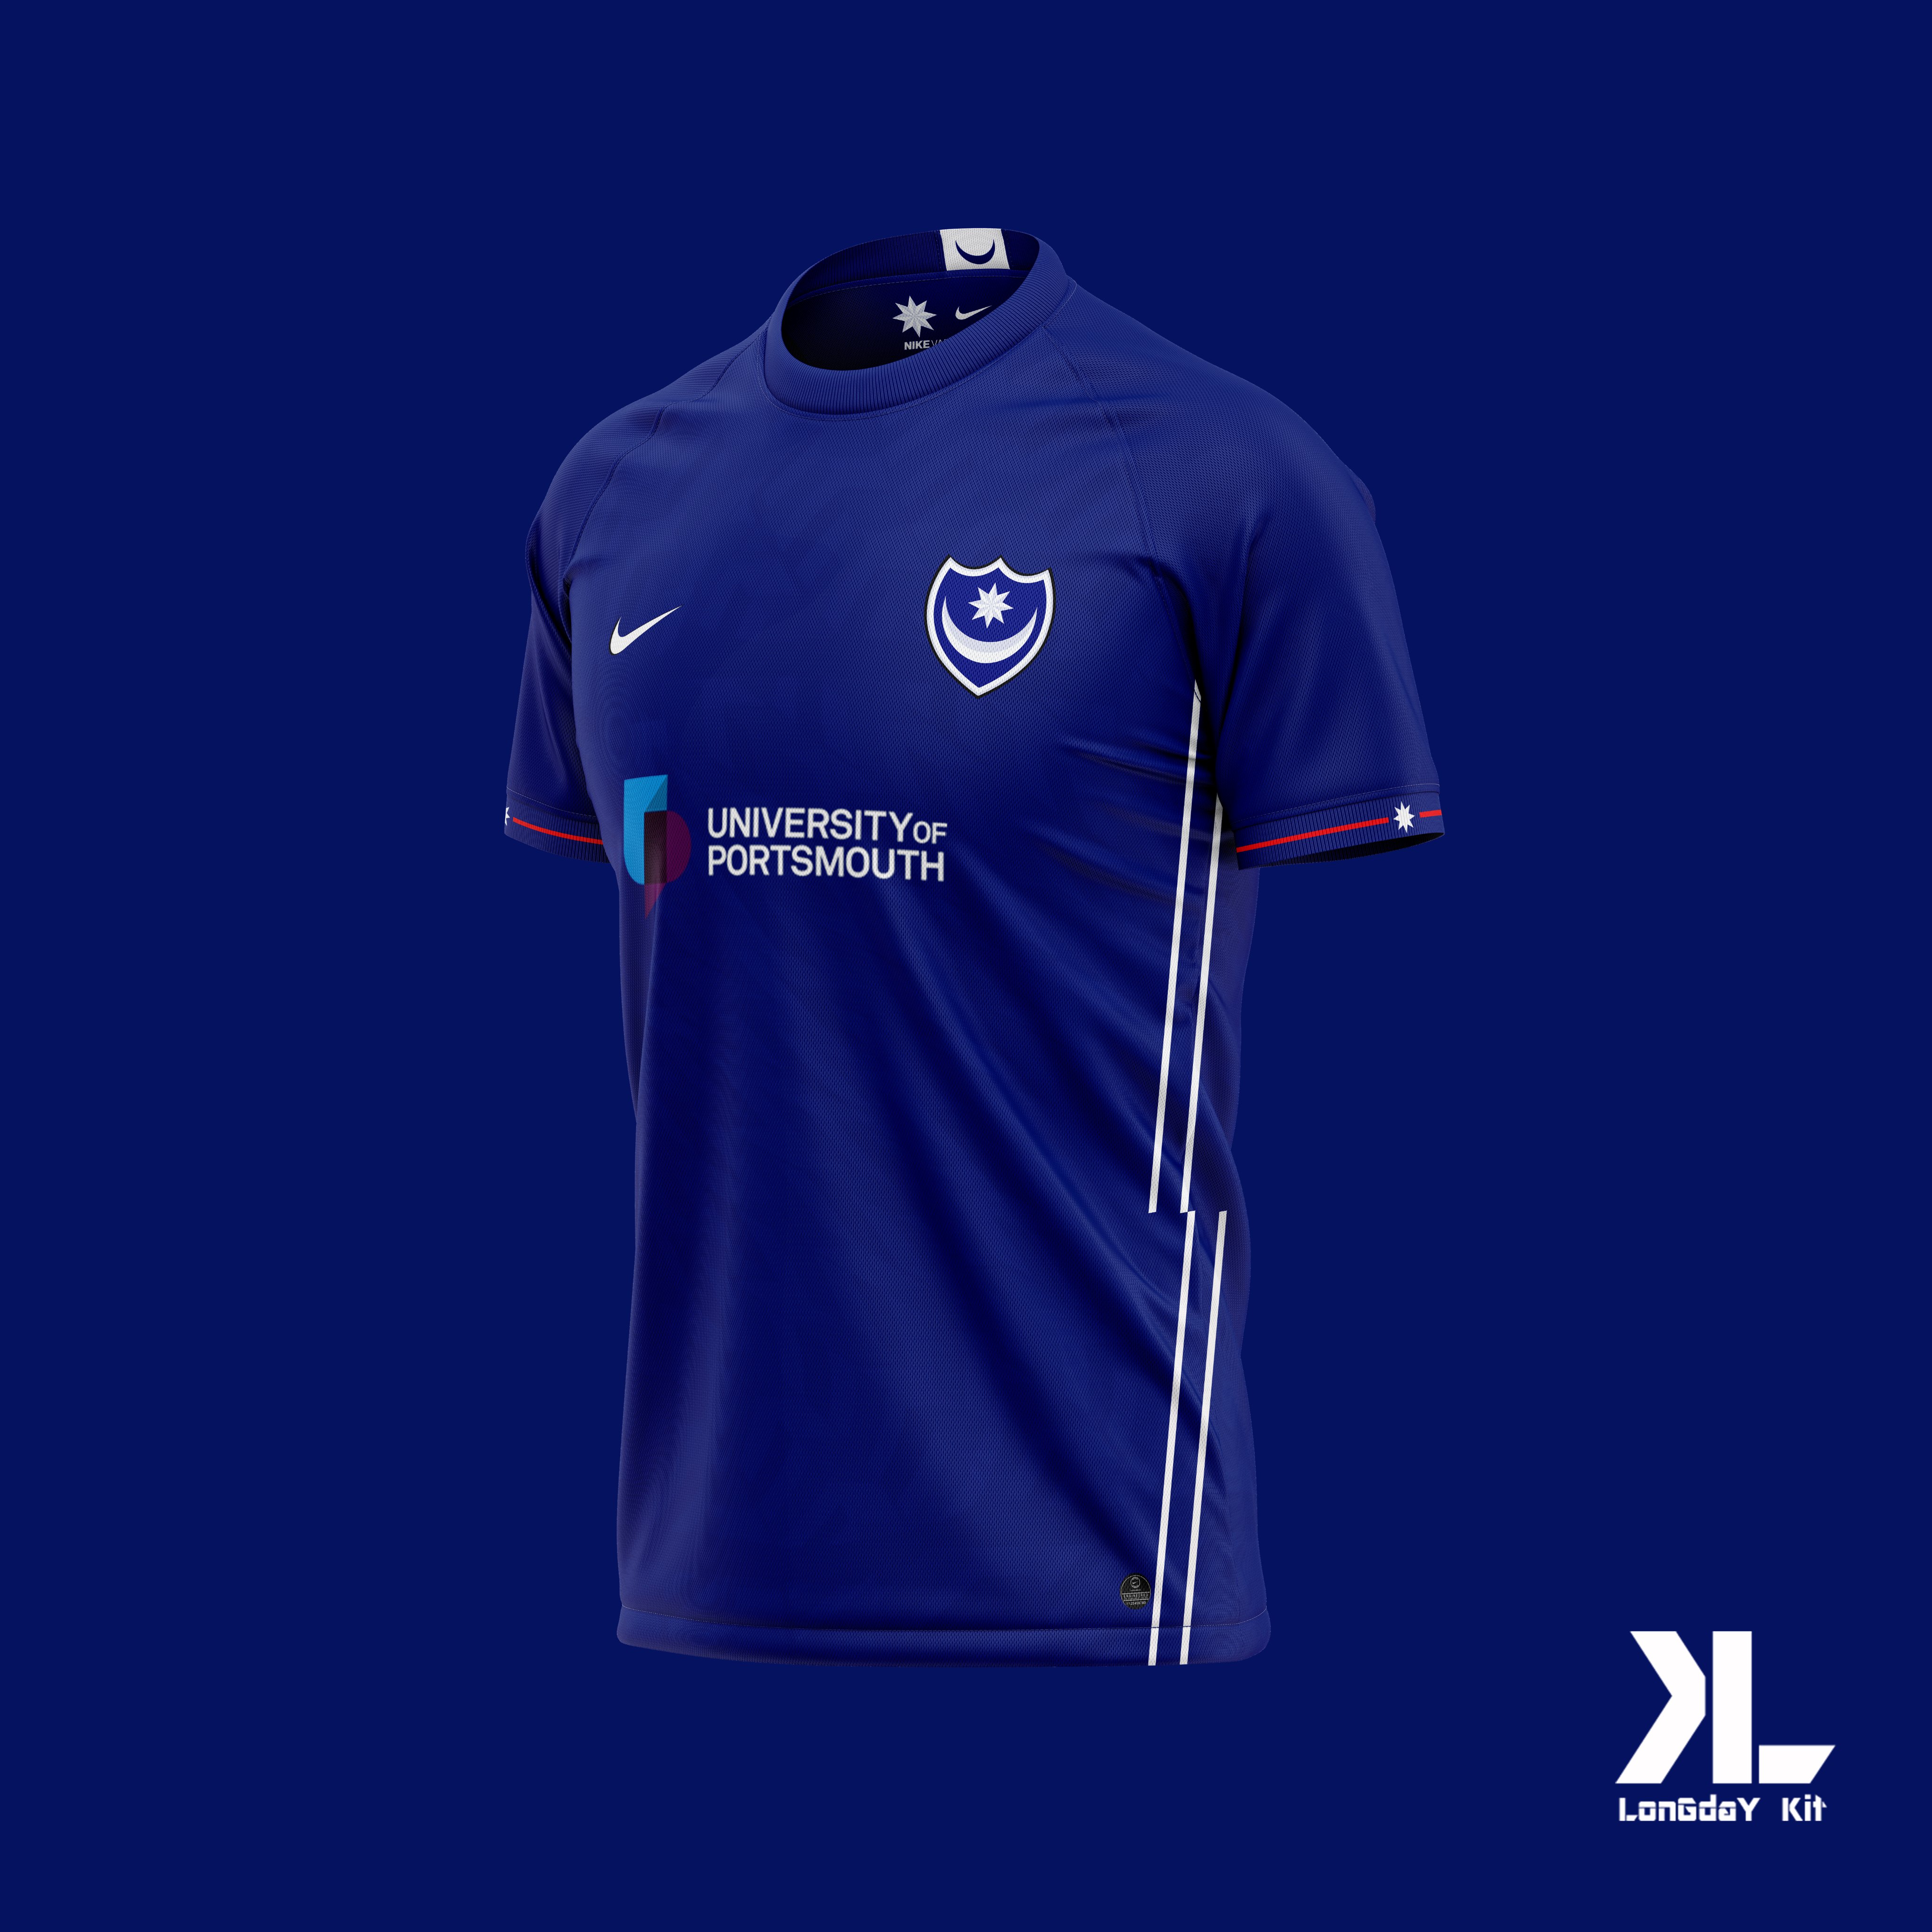 LonGdaY Kit on Twitter: "Portsmouth FC x Nike x Concept Kits #pompey # Portsmouth #portsmouthfc #pfc #frattonpark #nike #EFL #footballkit @freflchamp @EFL RT &amp; Like Appreciated https://t.co/mJiyhgl2vp" Twitter